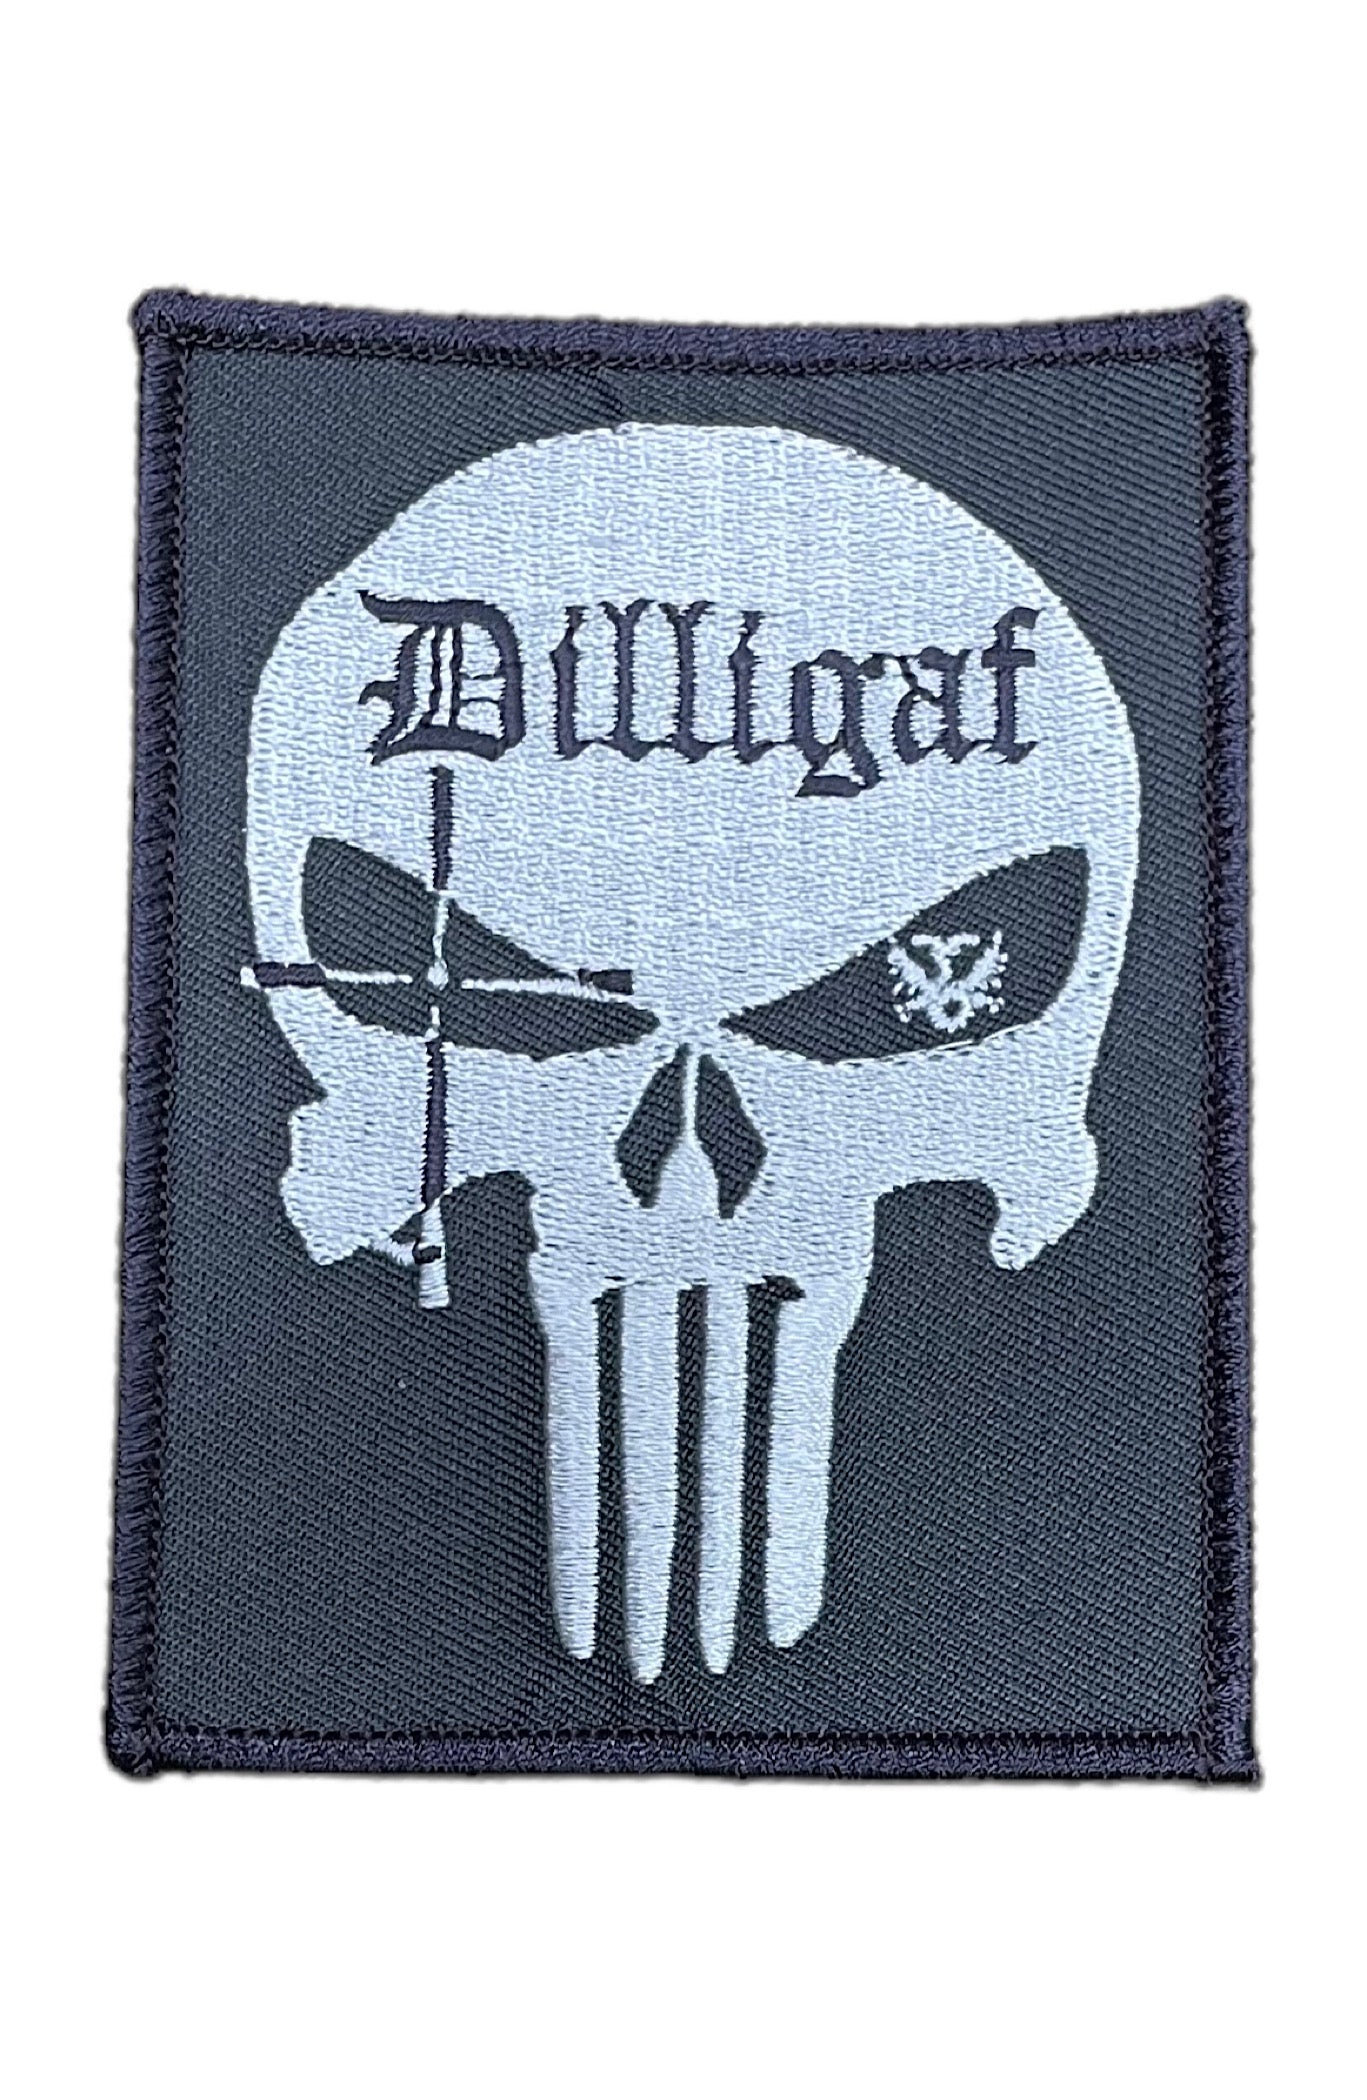 Dilligaf Punisher Patch 4”x3” – Dilligaf by Bohica Bill